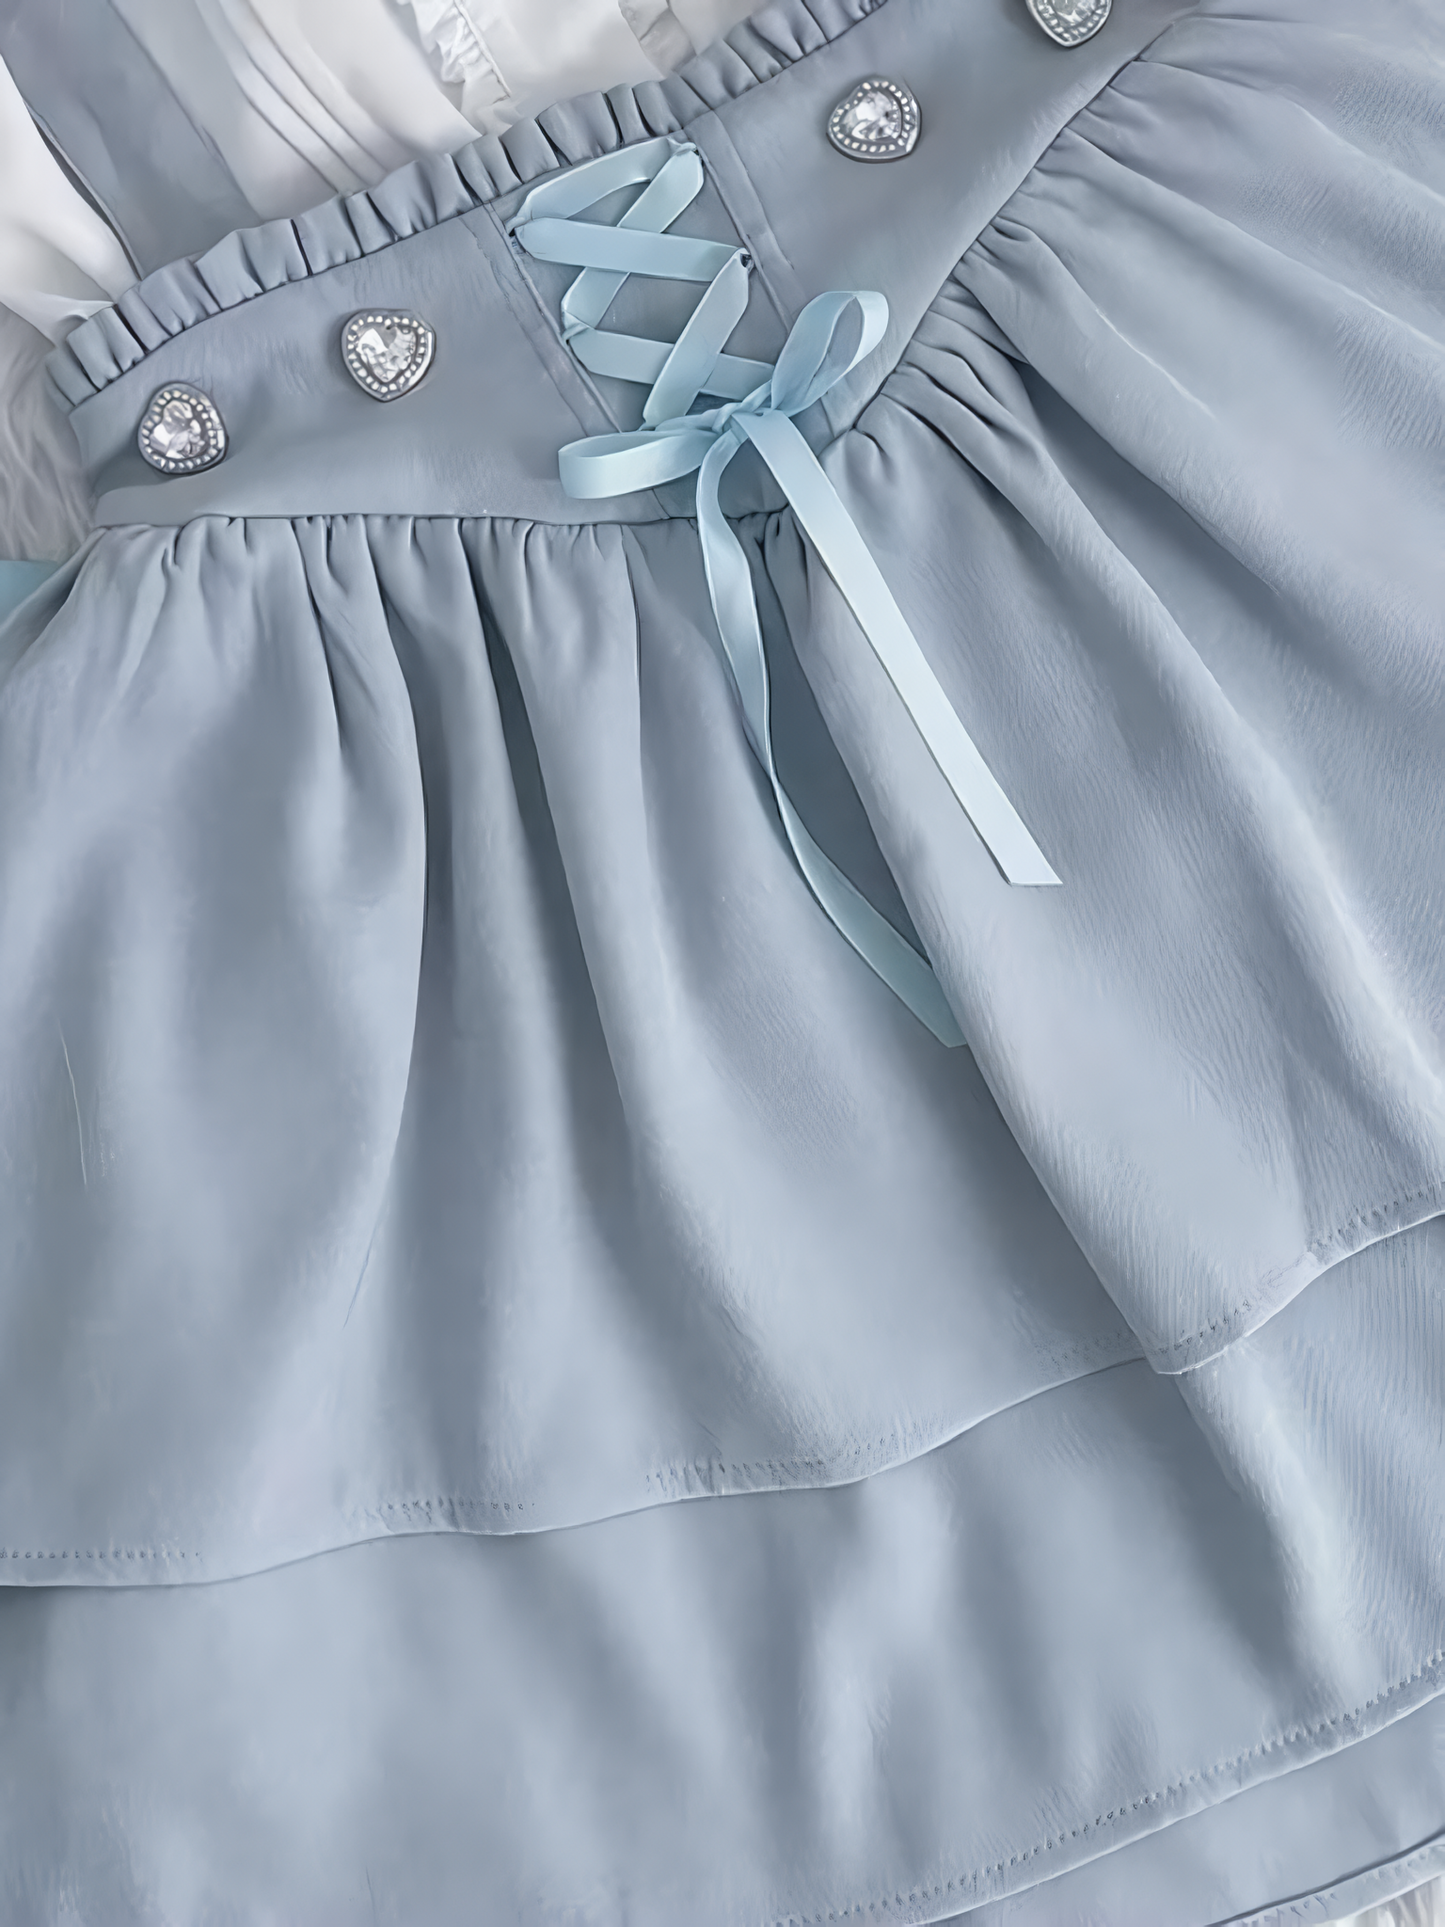 로고 지워주세요🥺어려우신 경우 이미지 이외로 해 두세요 Meijiu Gakuen mine water color system angel kakuma mass production type women's lace long-sleeved shirt skirt セット